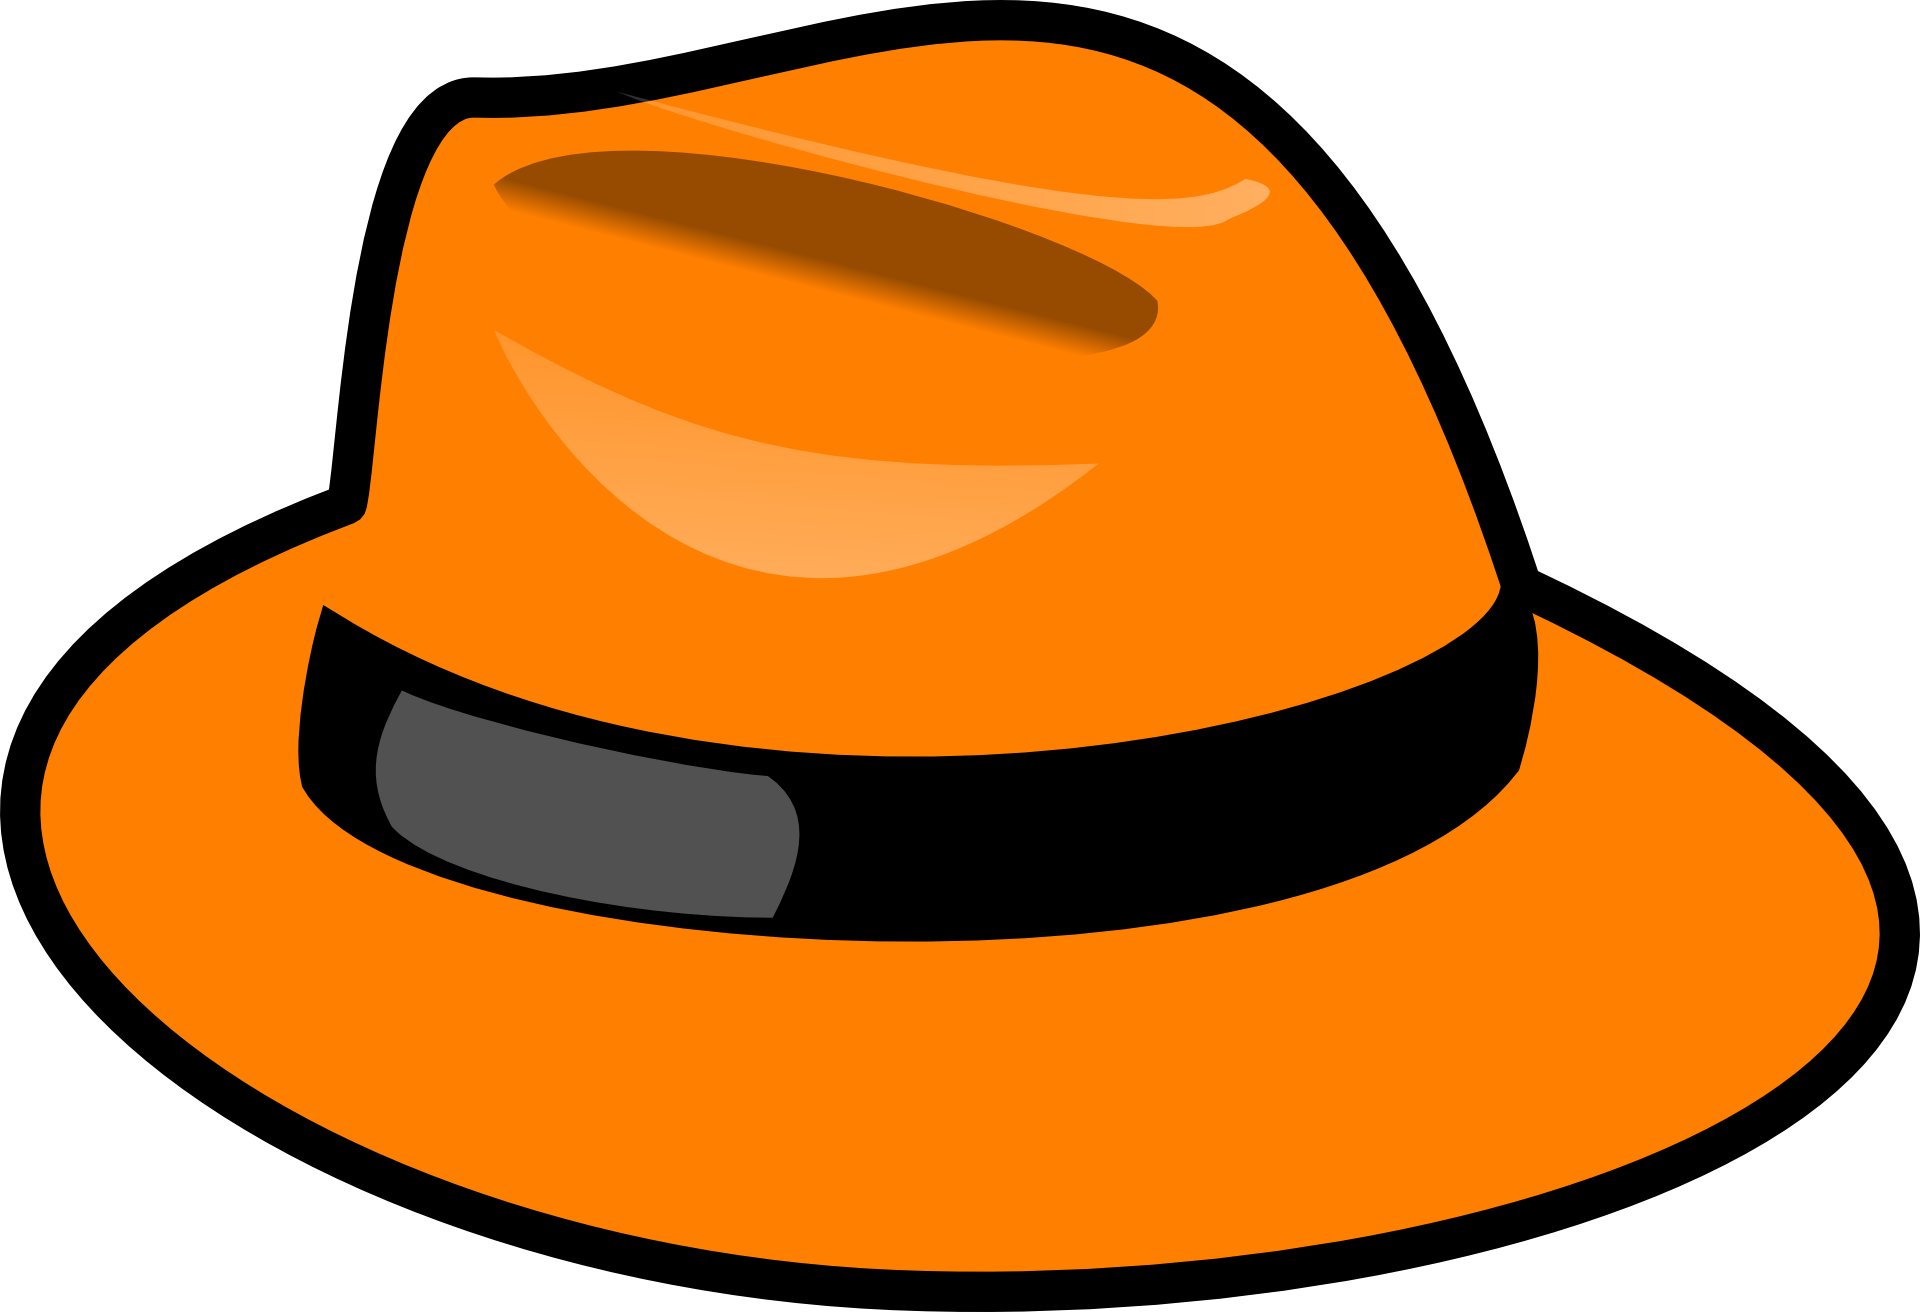 Welche hat die. Шляпы мультяшные. Мультяшные шляпки. Шляпа оранжевая. Шляпа рисунок.